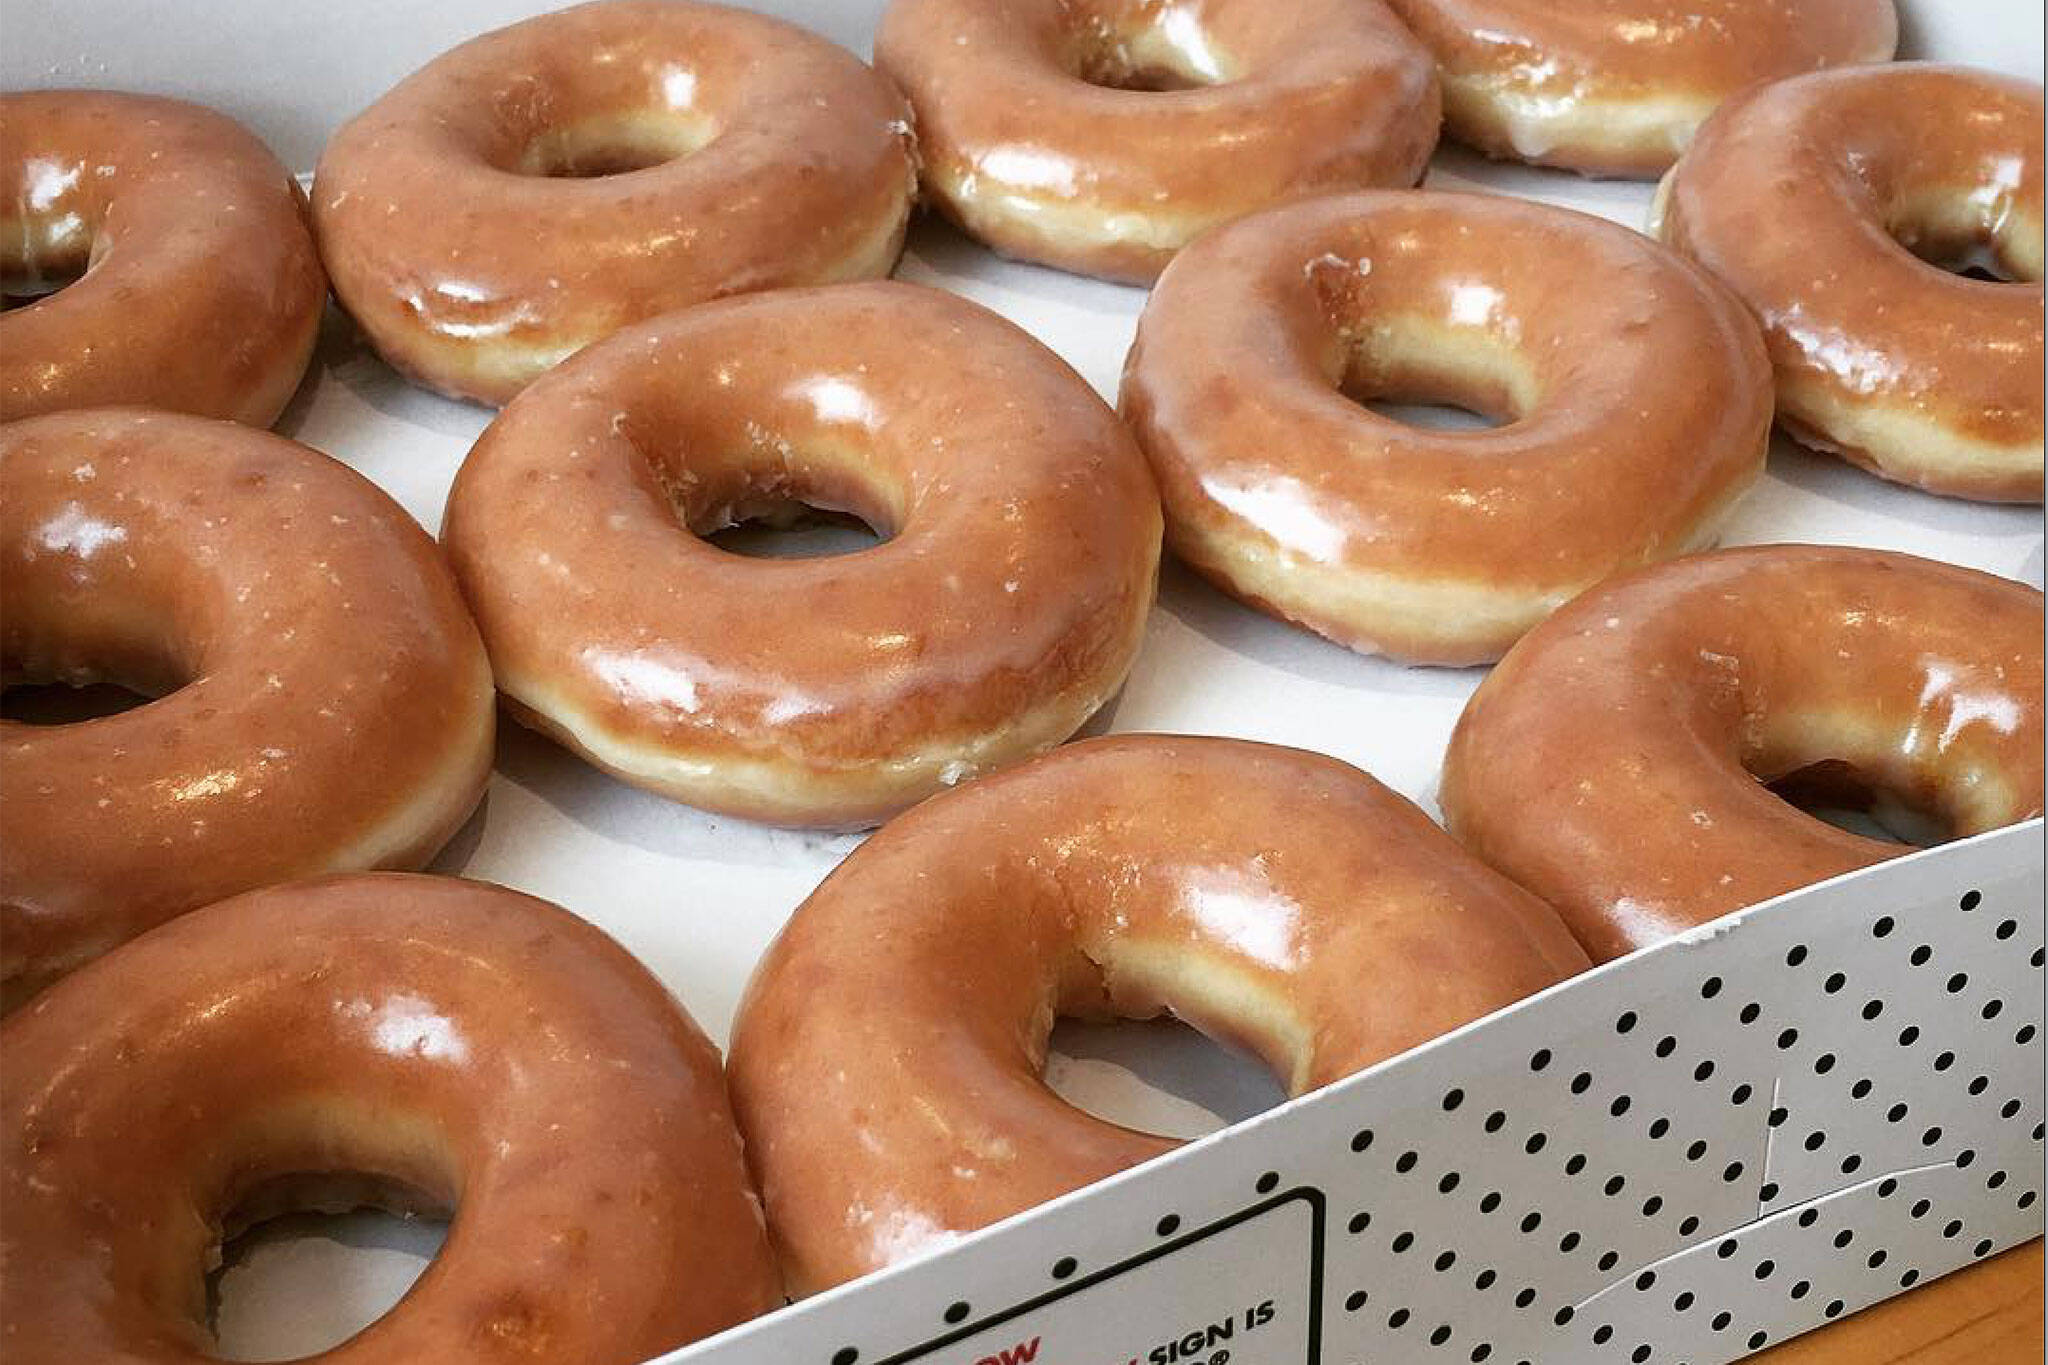 Krispy Kreme is giving away free donuts in Toronto